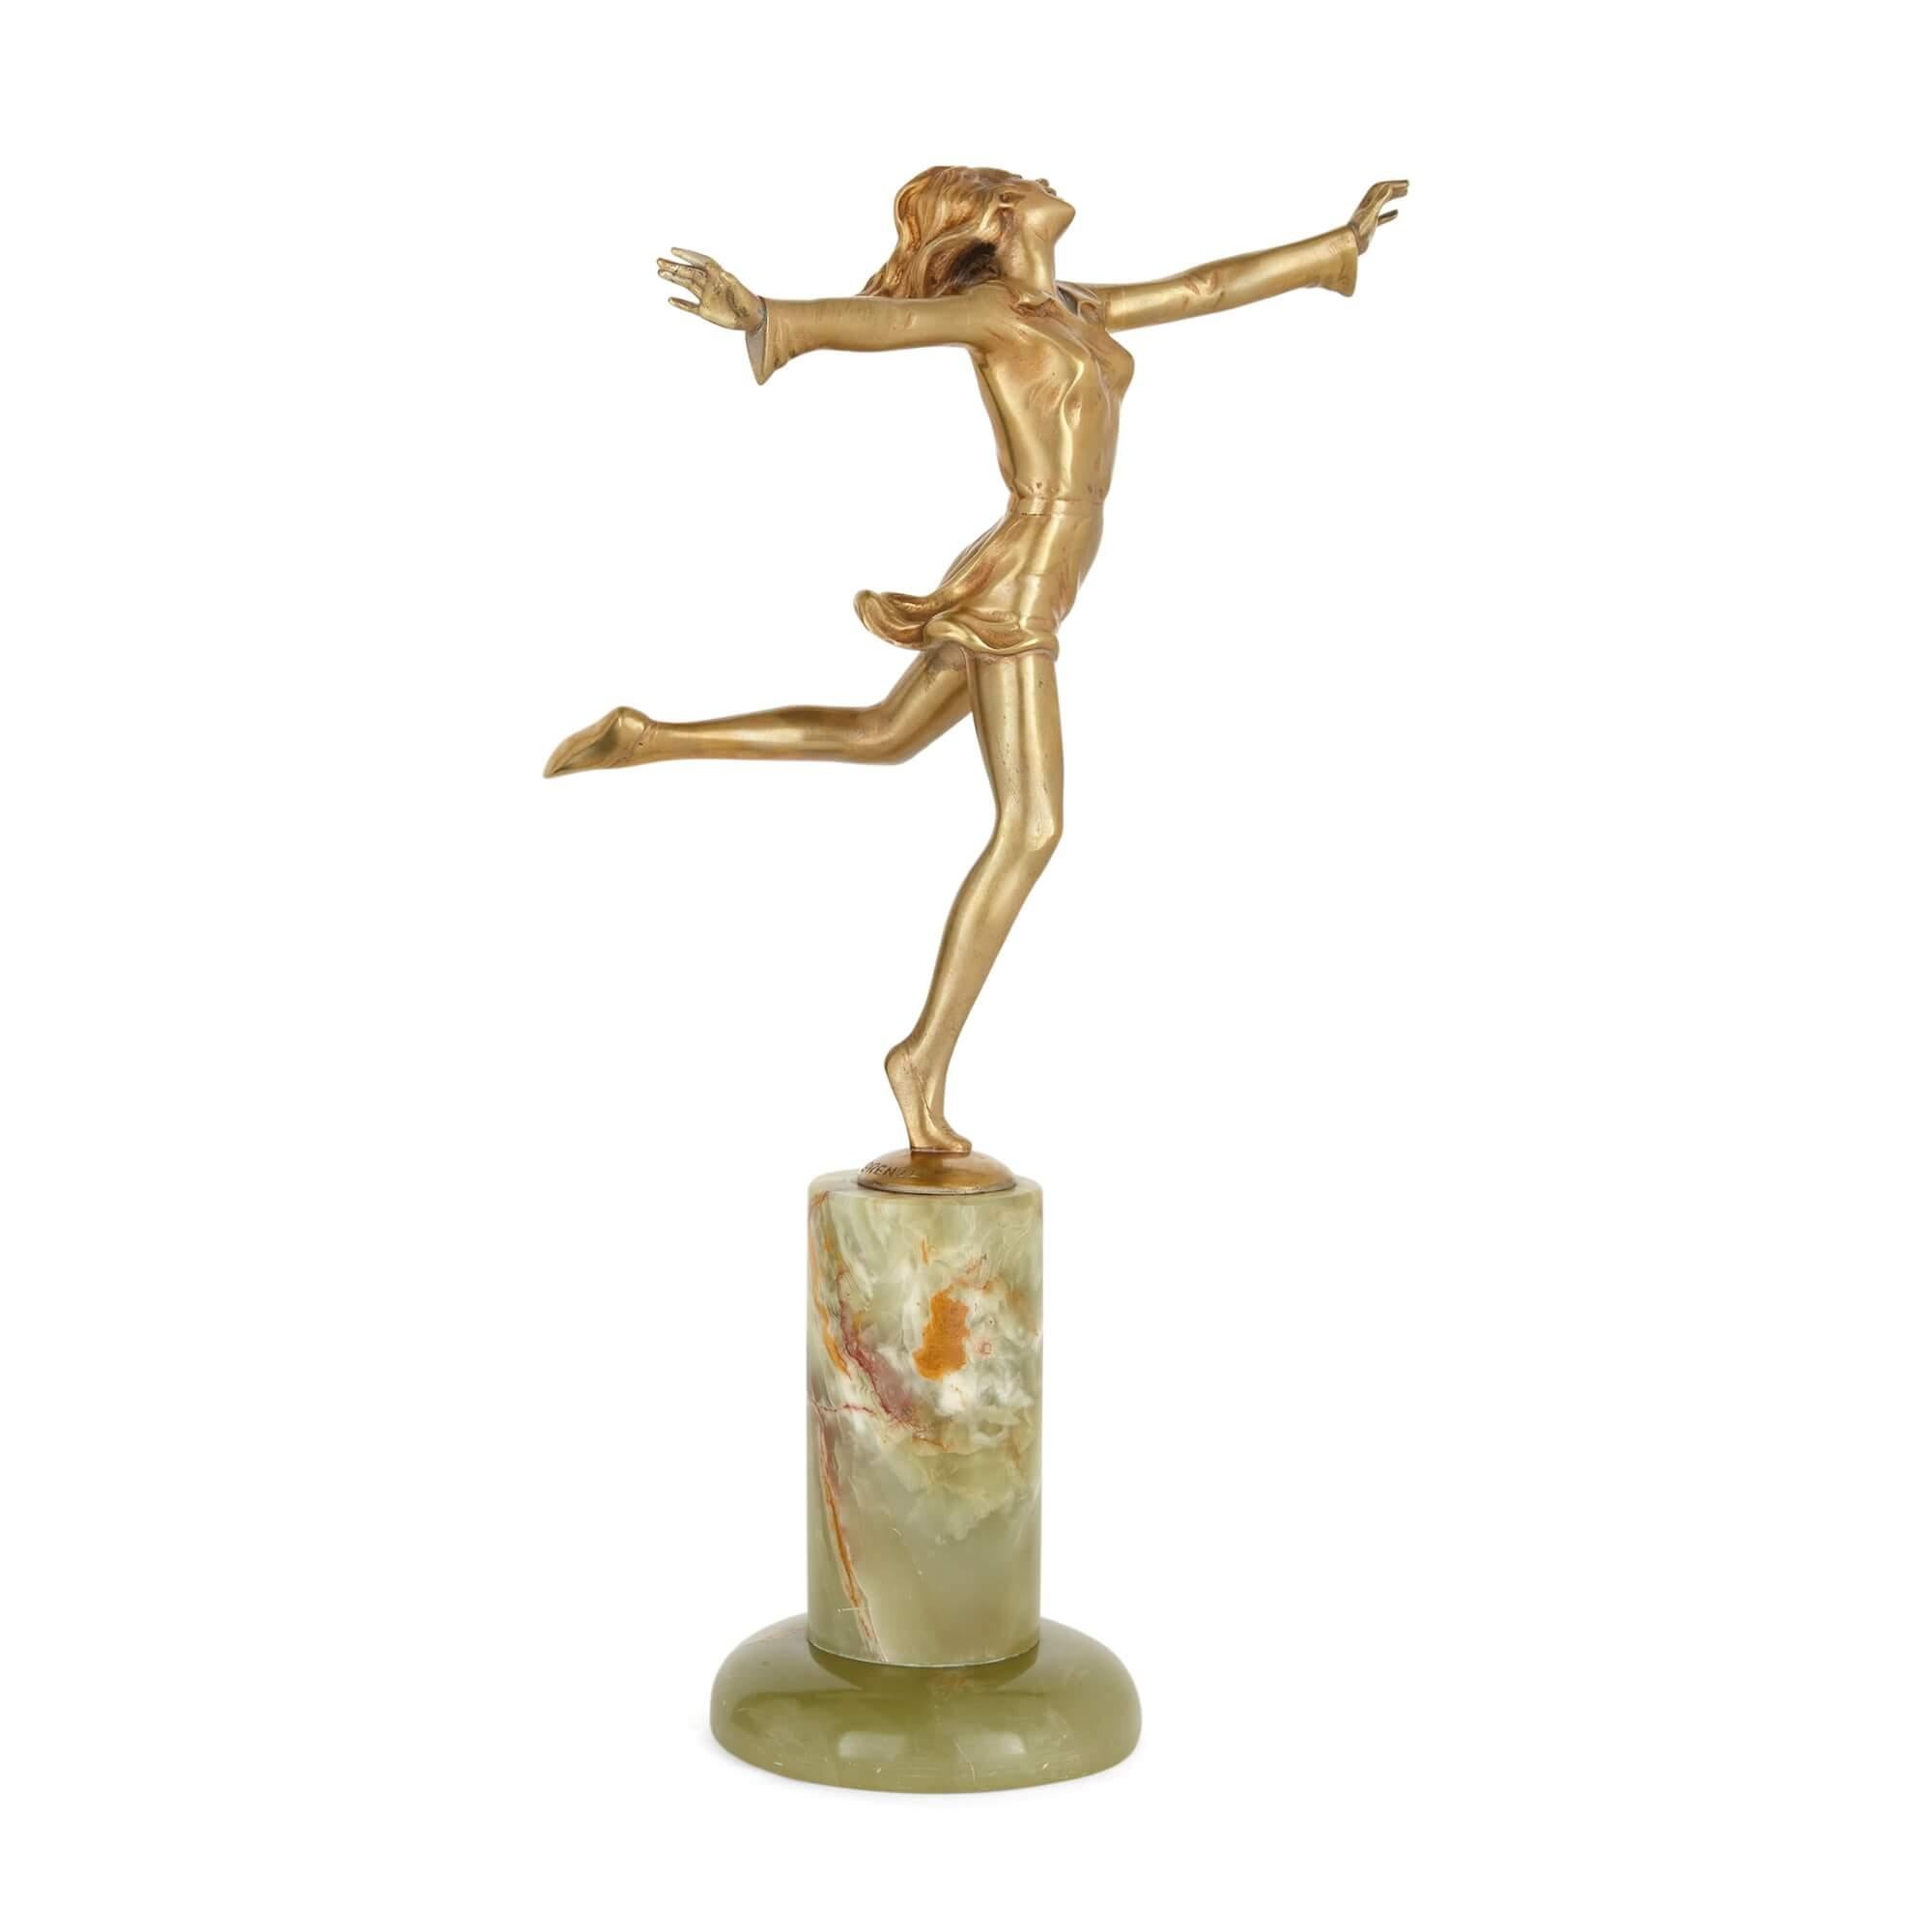 Vergoldete Bronze- und Onyxfigur einer Tänzerin im Art déco-Stil von Lorenzl 
Österreicher, um 1925
Höhe 31cm, Breite 17cm, Tiefe 20cm

Josef Lorenzl (1892-1950), ein bekannter österreichischer Bildhauer und Keramiker, schuf diese fröhliche Figur